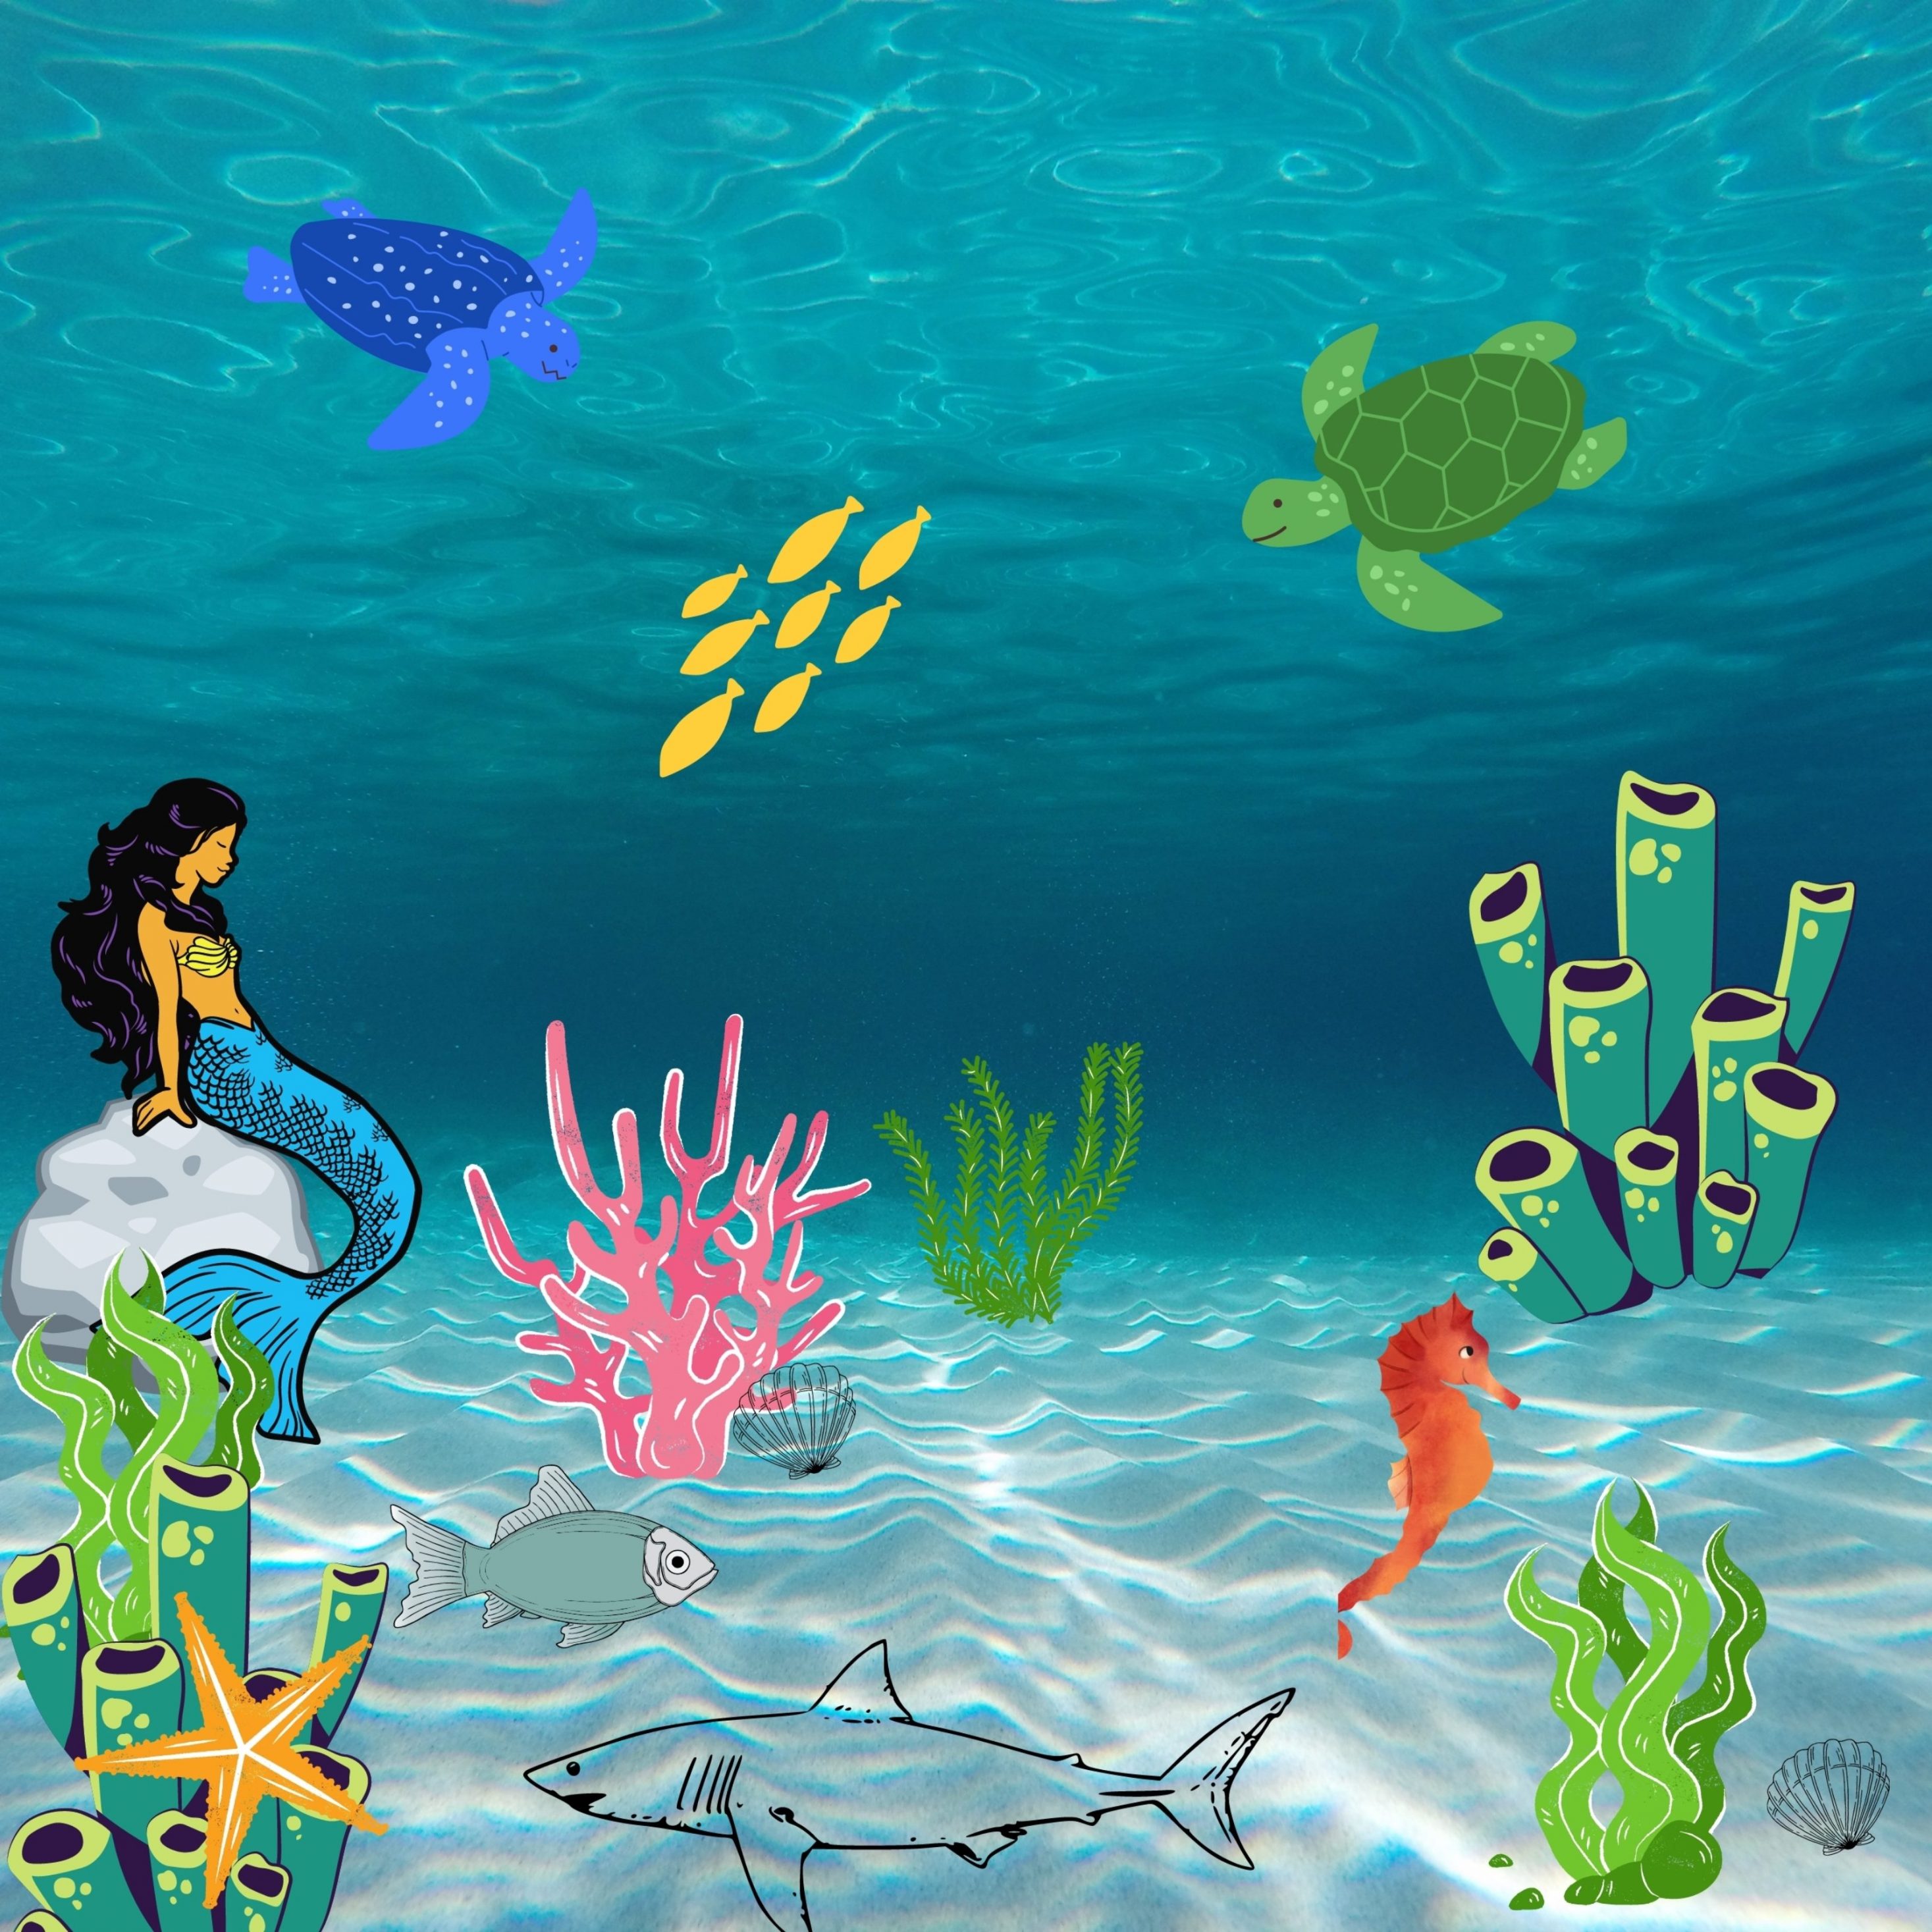 2934x2934 iOS iPad wallpaper 4k Underwater Creatures iPad Wallpaper 2934x2934 pixels resolution